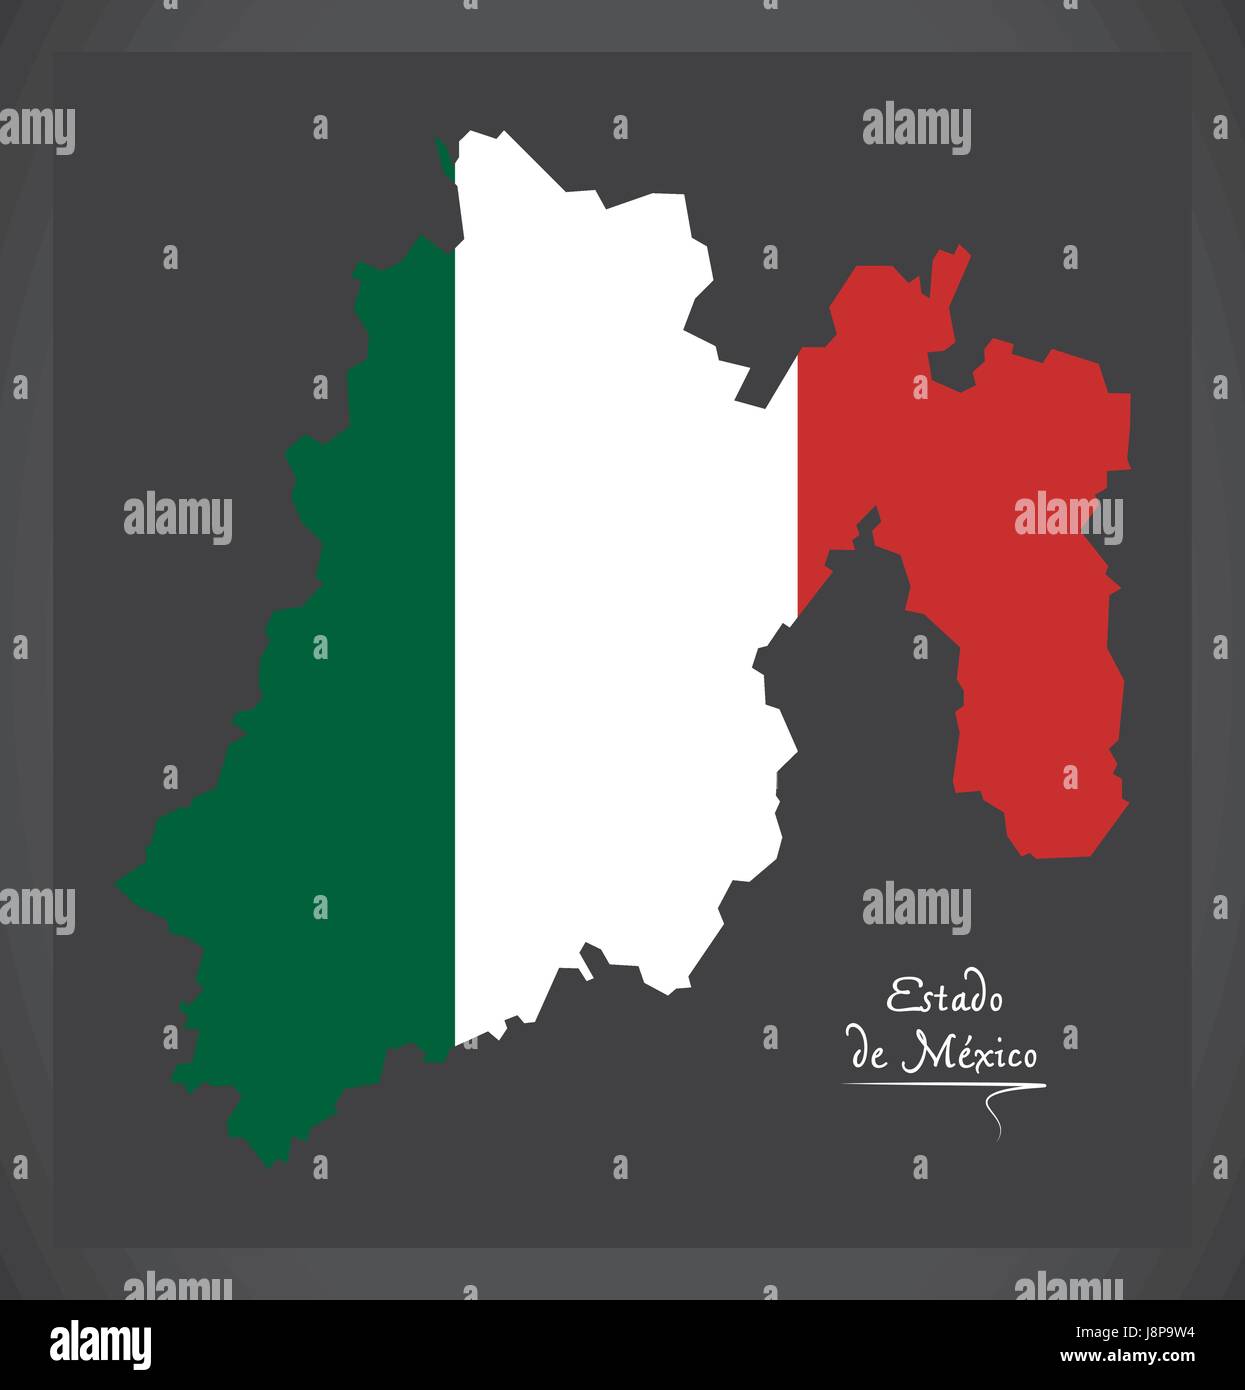 Estado de Mexico map with Mexican national flag illustration Stock Vector